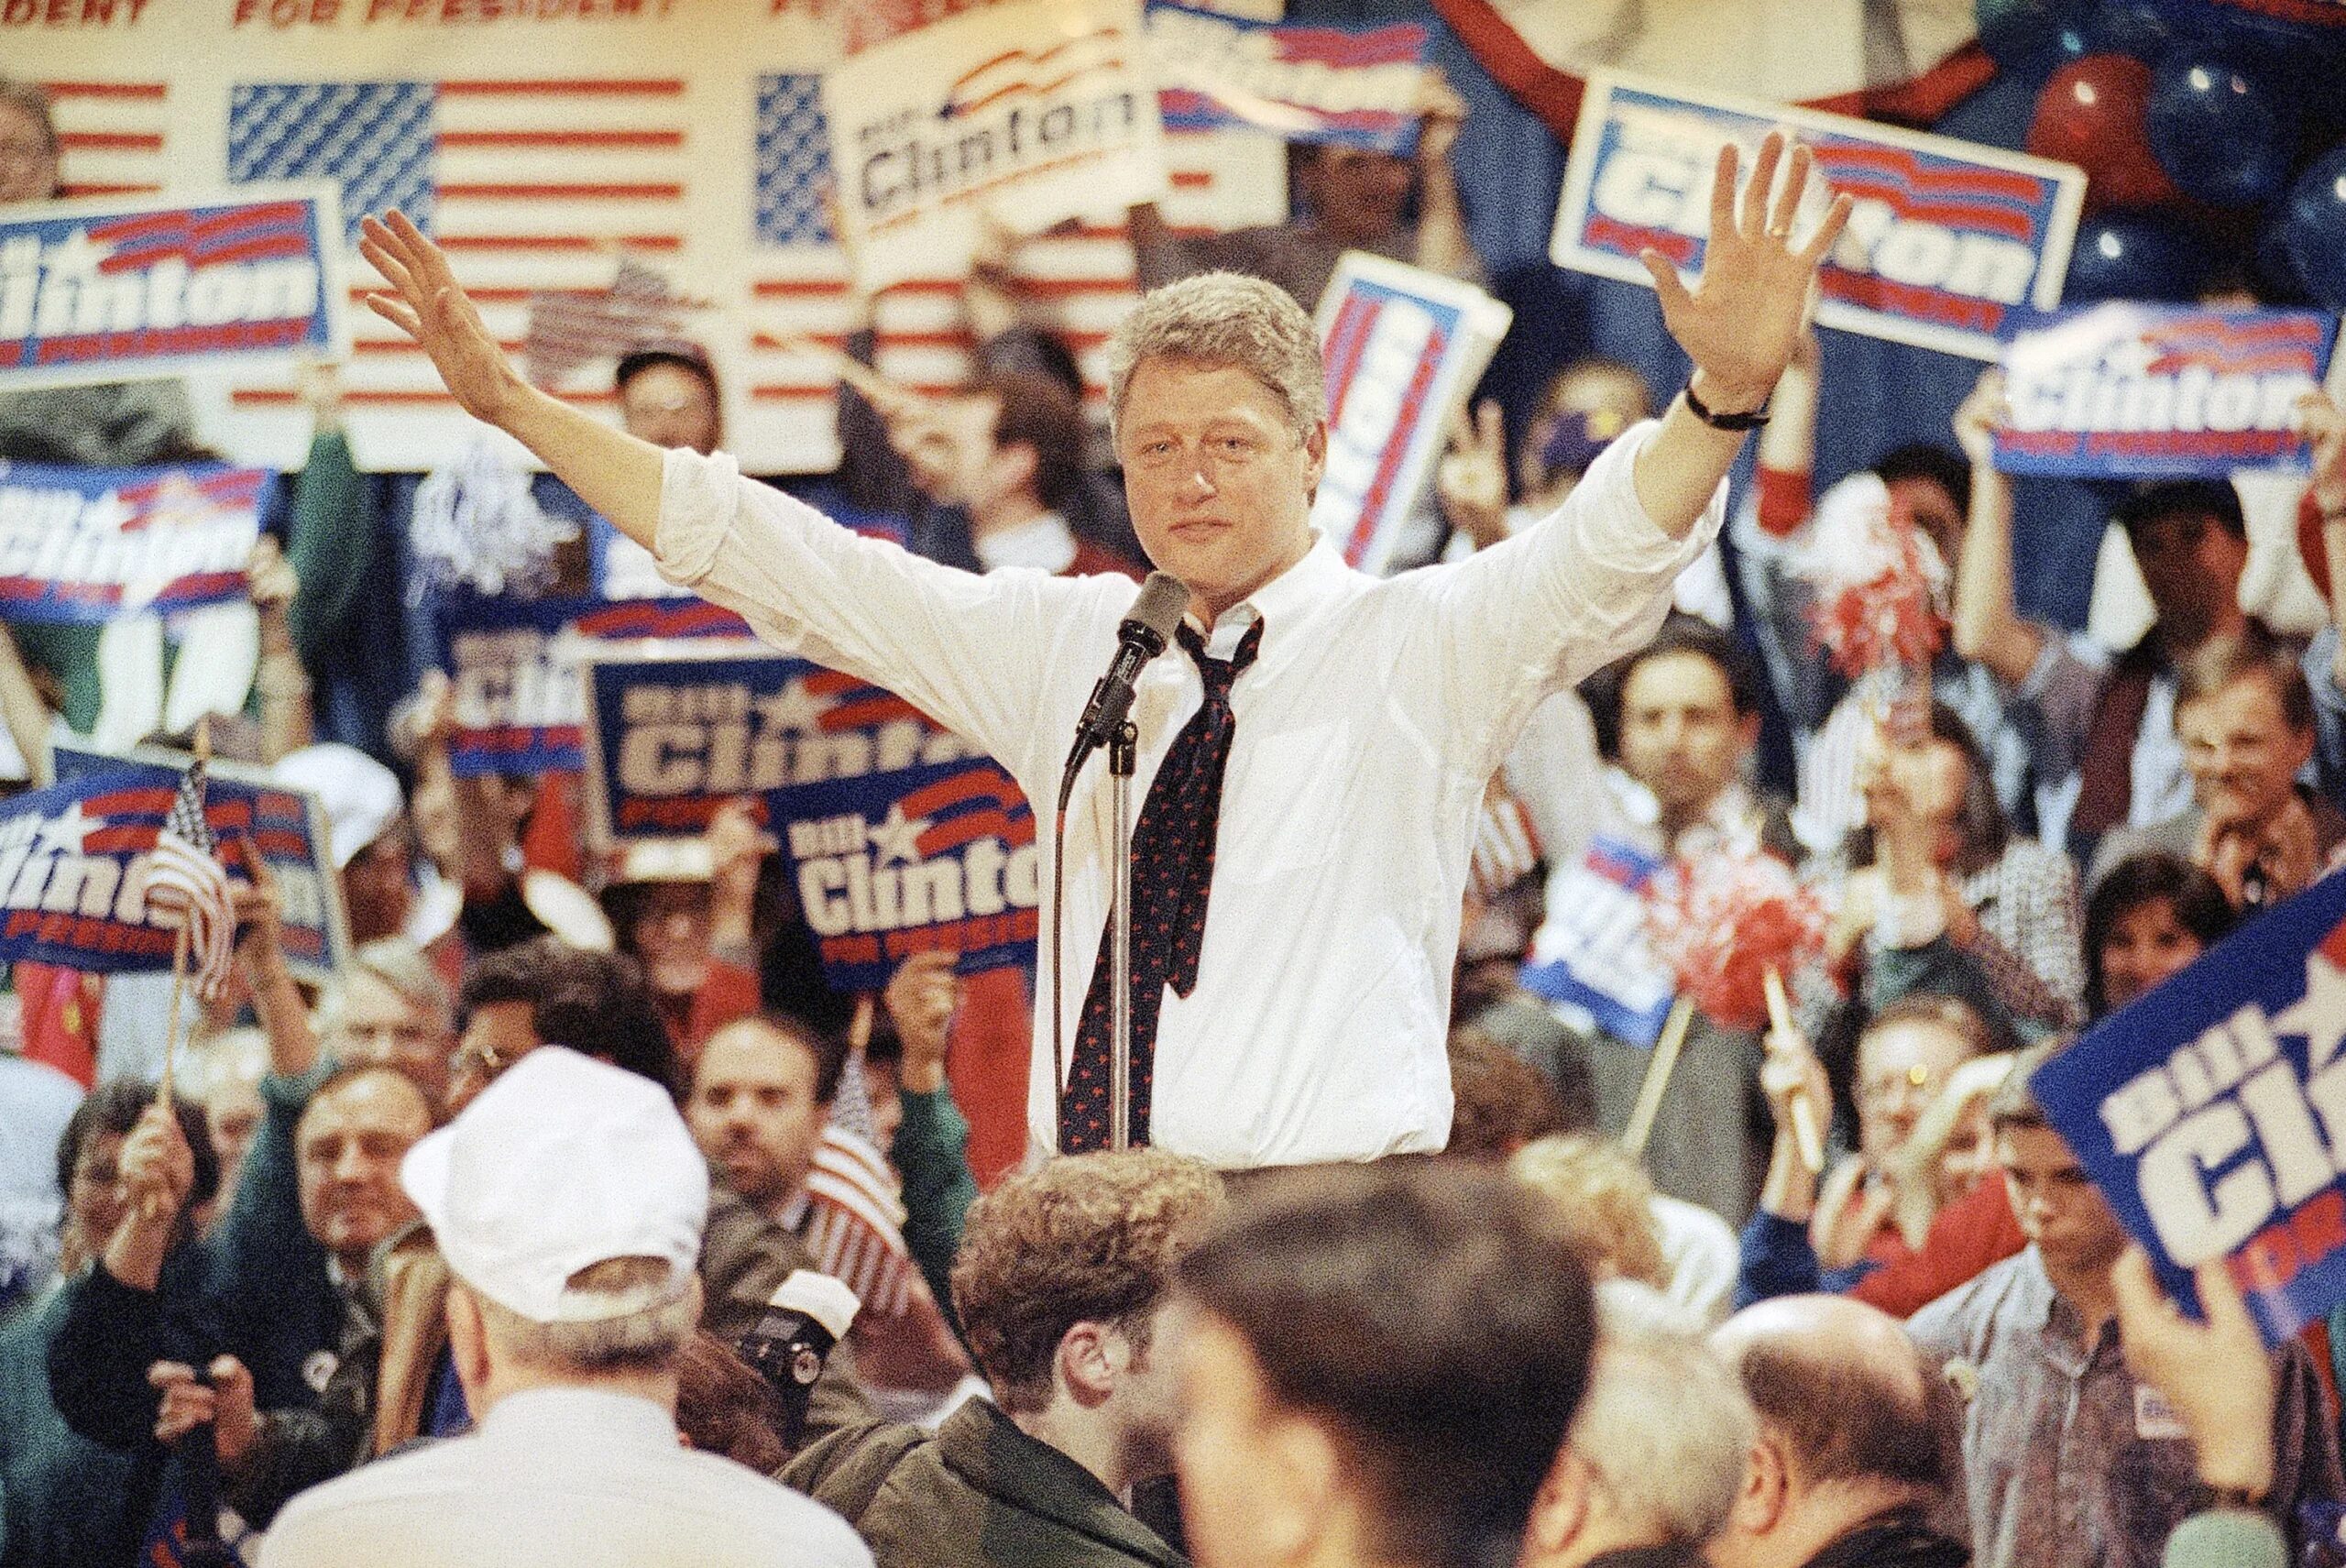 Выборы республиканской партии. Билл Клинтон выборы 1992. Билл Клинтон 1980. Билл Клинтон Буш 1992. Билл Клинтон (1992—2000 гг.)..